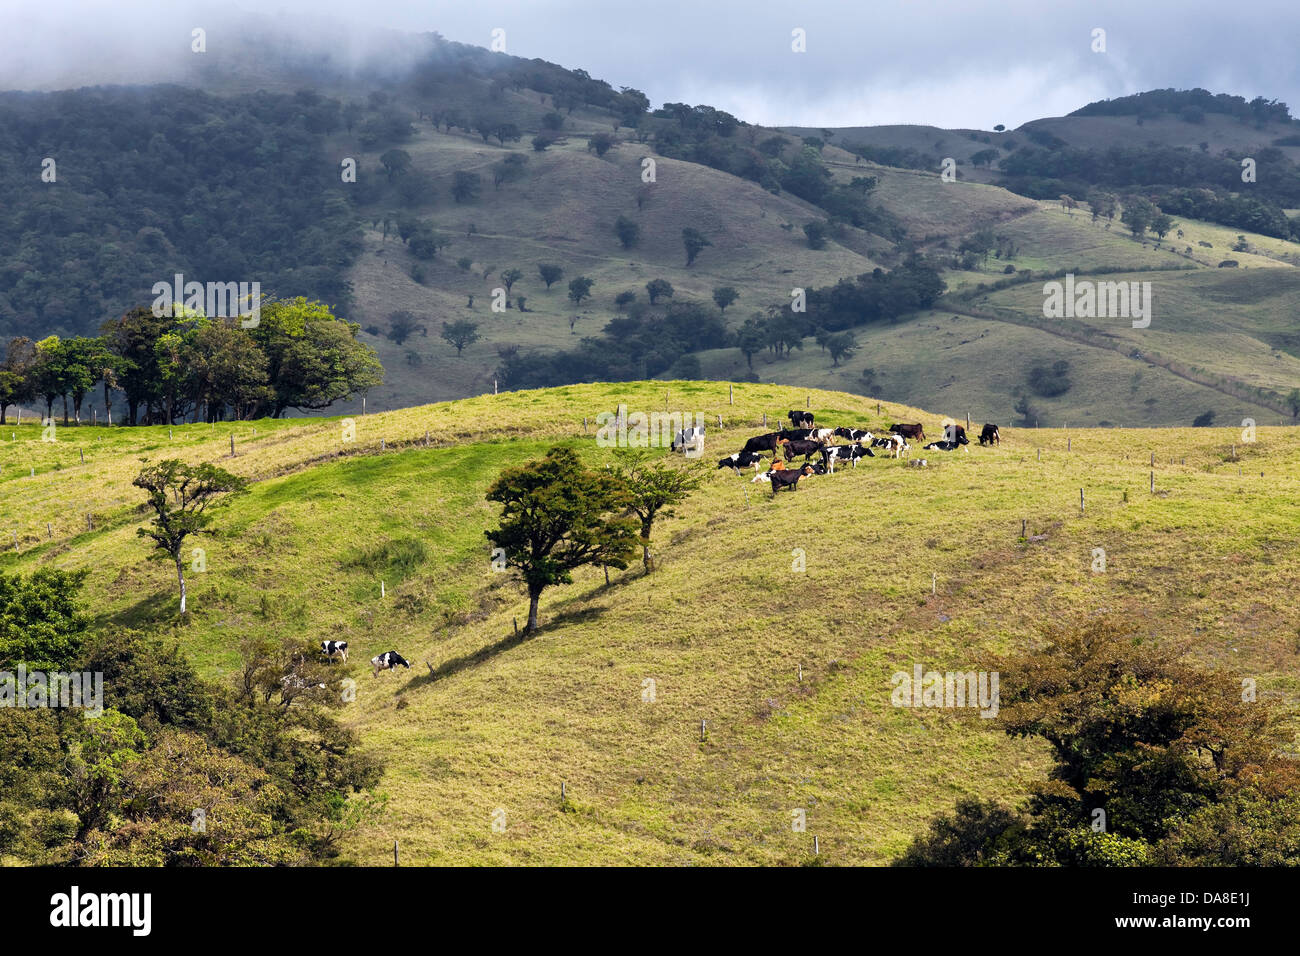 Le bétail nourri à l'herbe, le Costa Rica Banque D'Images